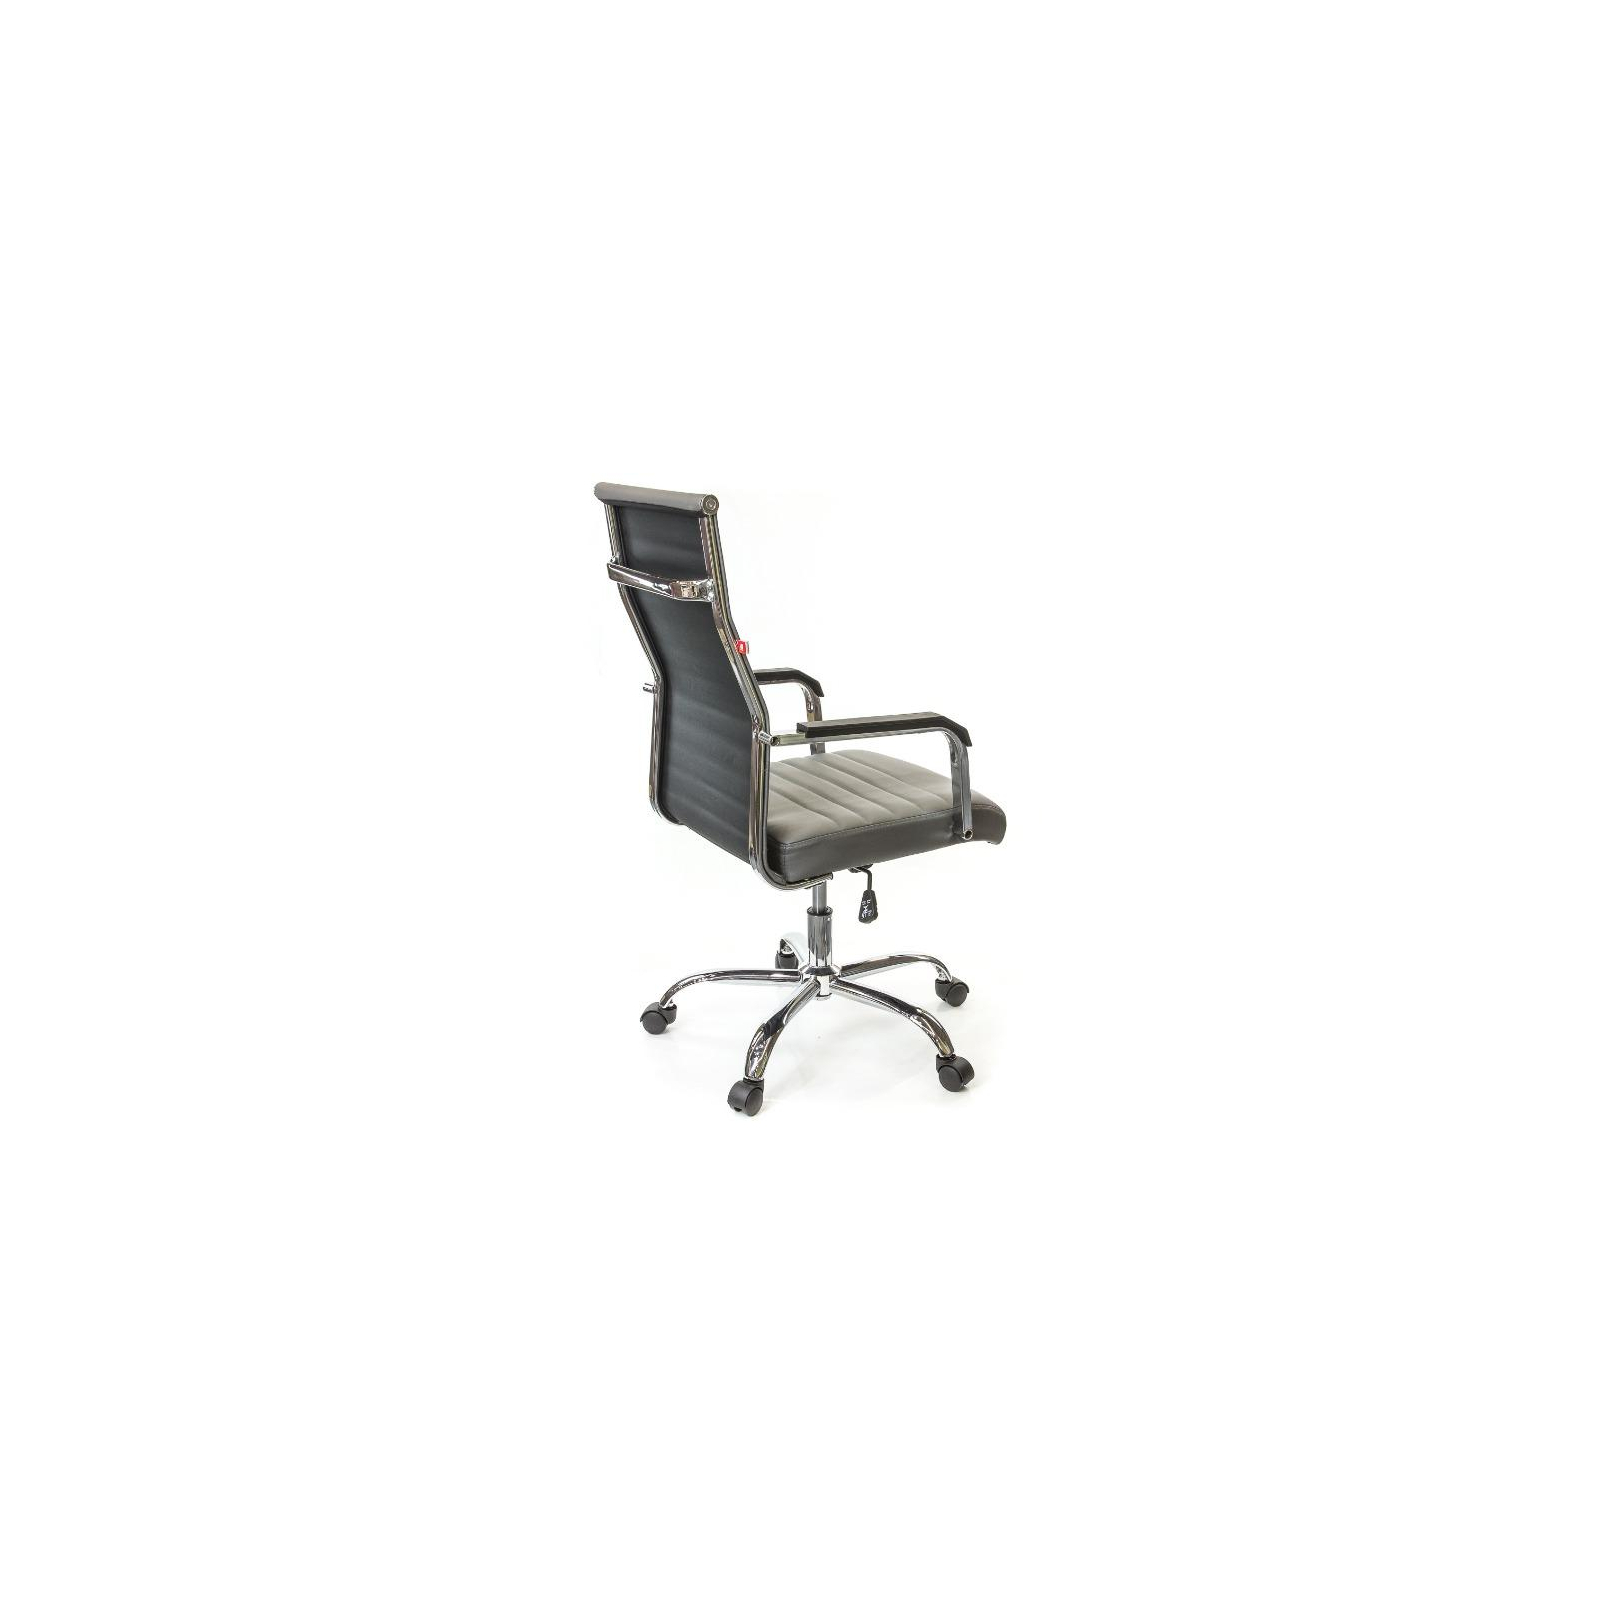 Офісне крісло Аклас Кап FX СН TILT Красное (09904) зображення 4